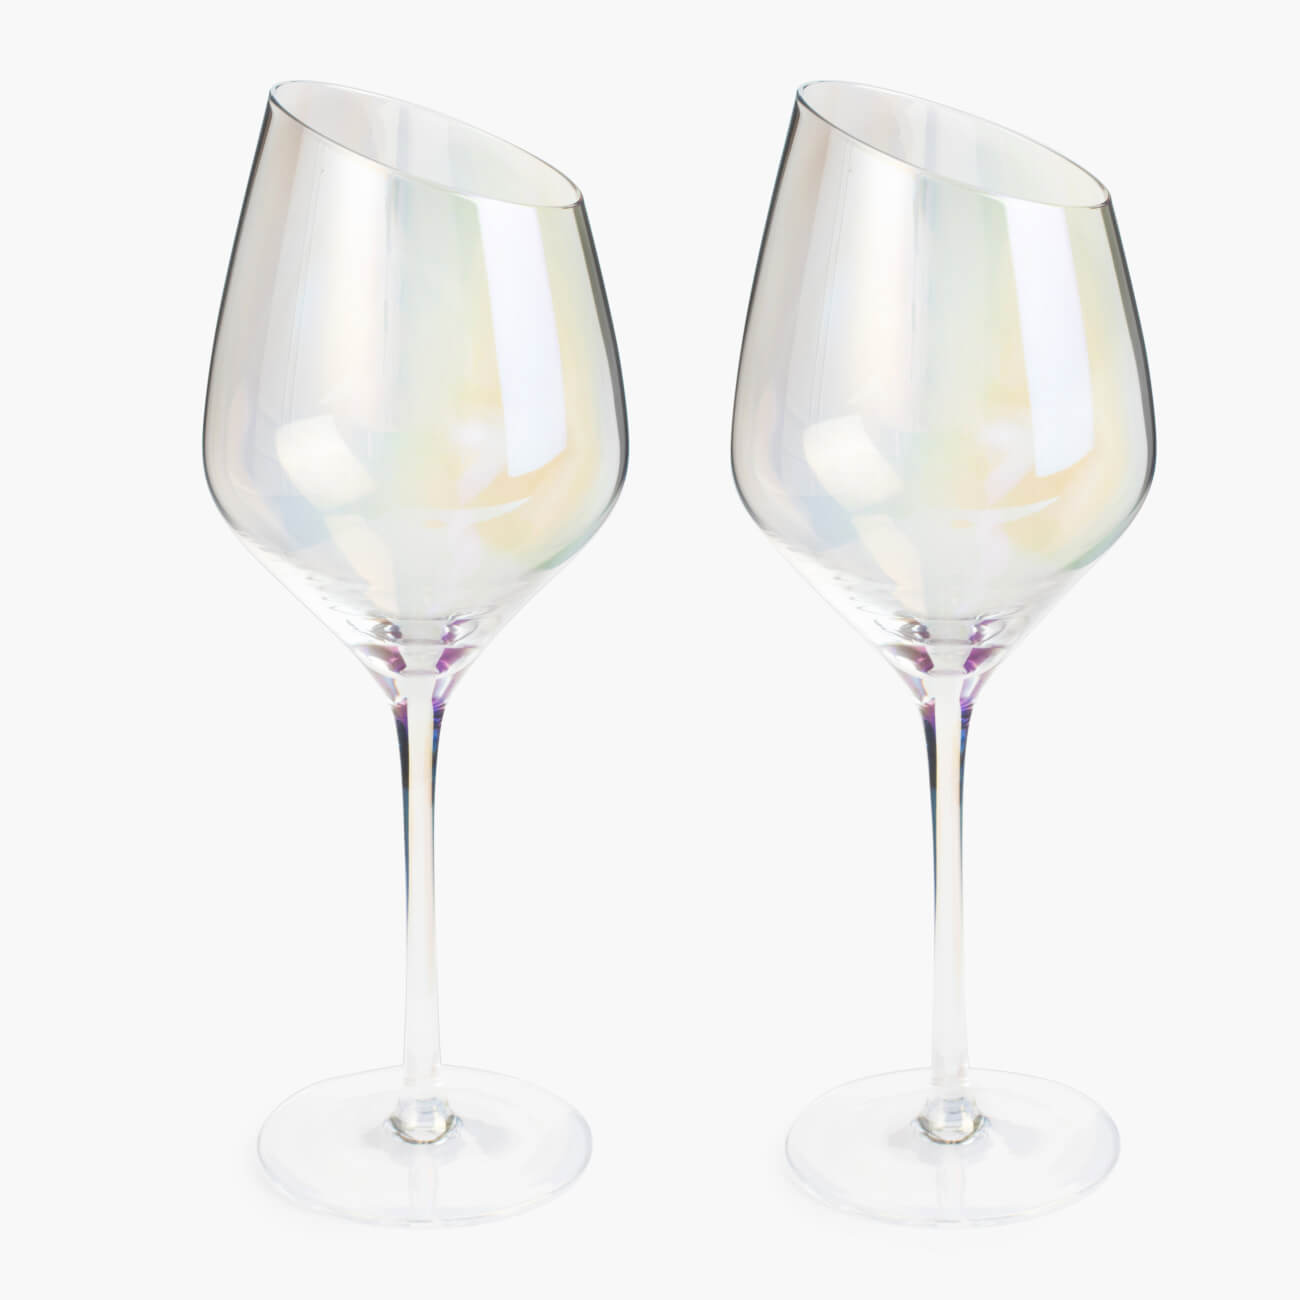 Бокал для белого вина, 460 мл, 4 шт, стекло, перламутр, Charm L polar бокал для вина luminarc селест сияющий графит p1566 6шт 350мл